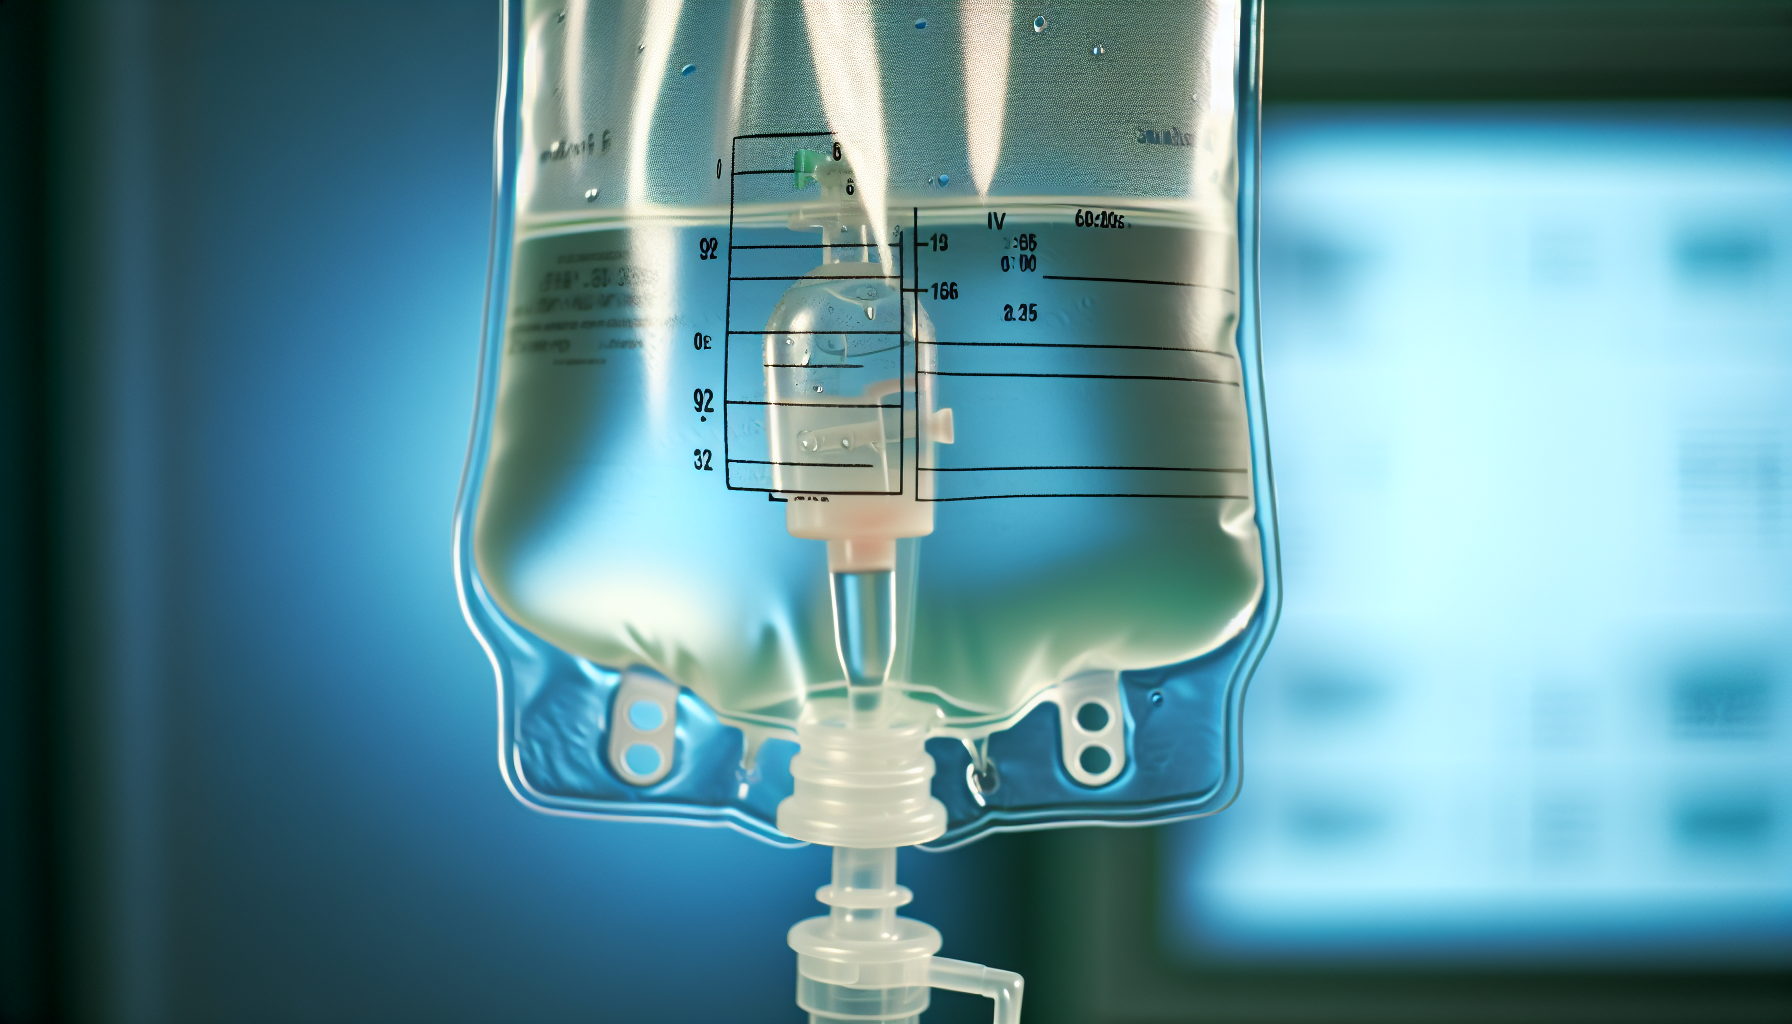 Intravenous (IV) fluid bag